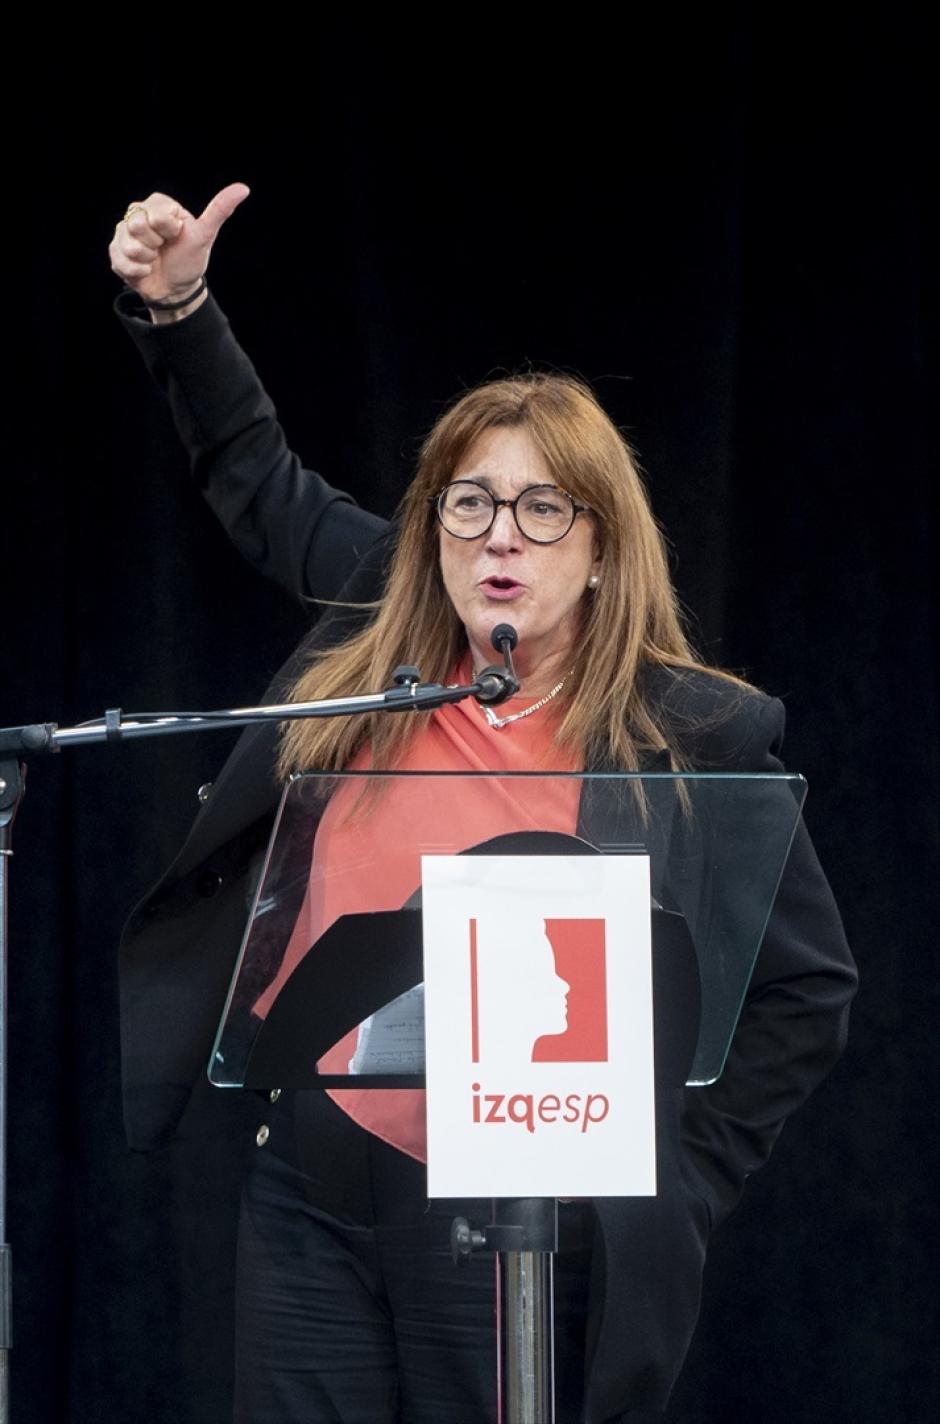 La exportavoz socialista y miembro de Izquierda Española, Soraya Rodríguez